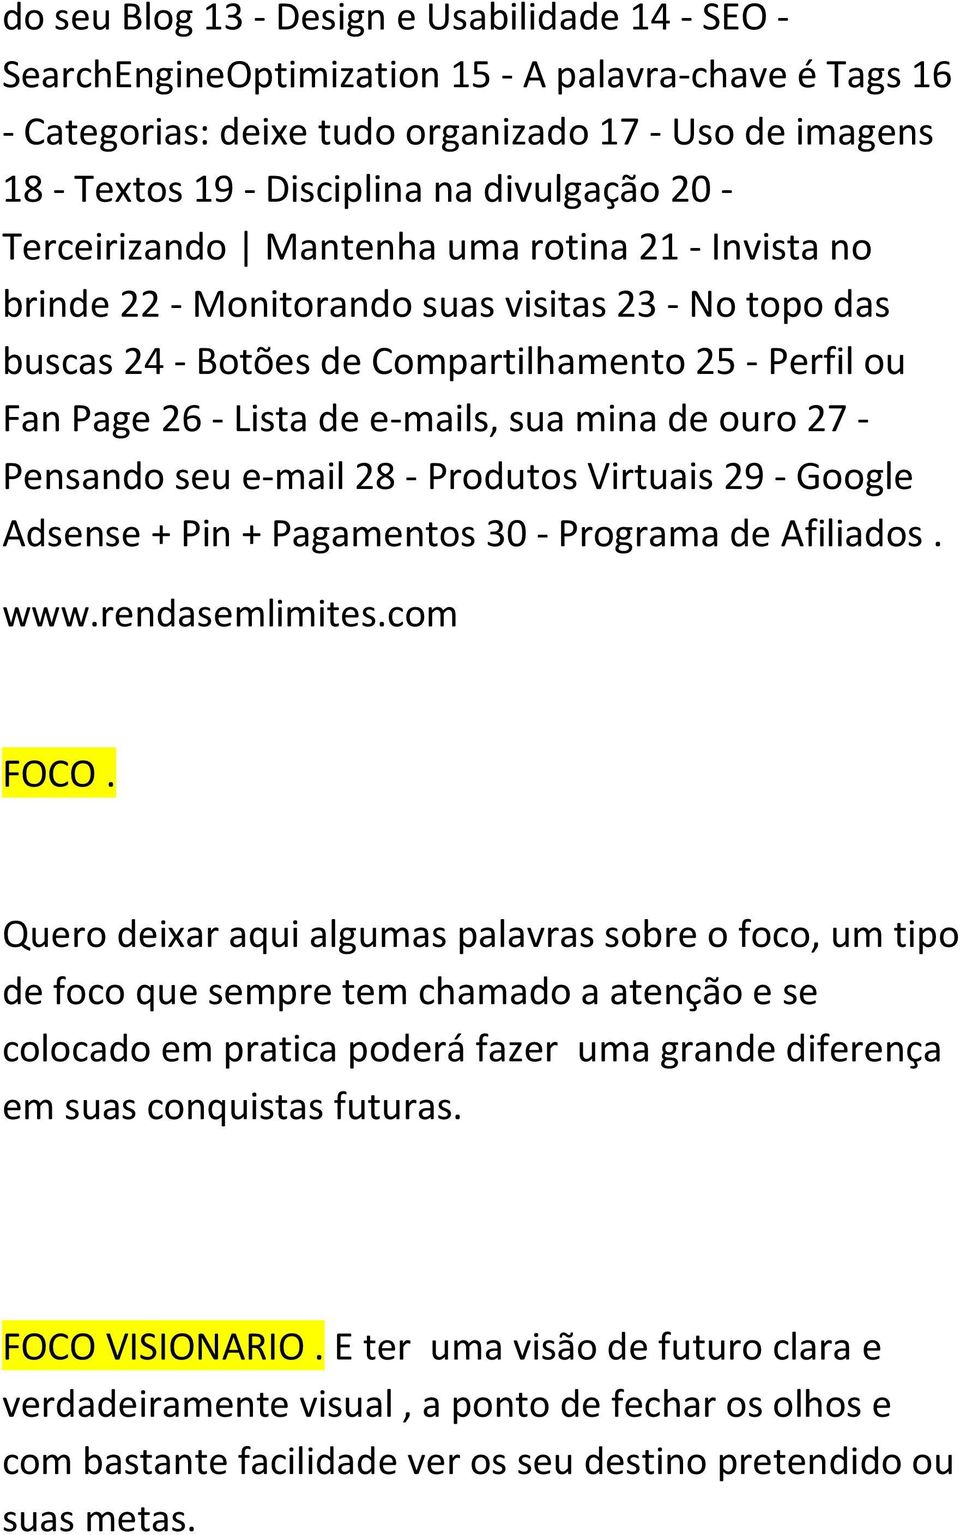 e-mails, sua mina de ouro 27 - Pensando seu e-mail 28 - Produtos Virtuais 29 - Google Adsense + Pin + Pagamentos 30 - Programa de Afiliados. FOCO.